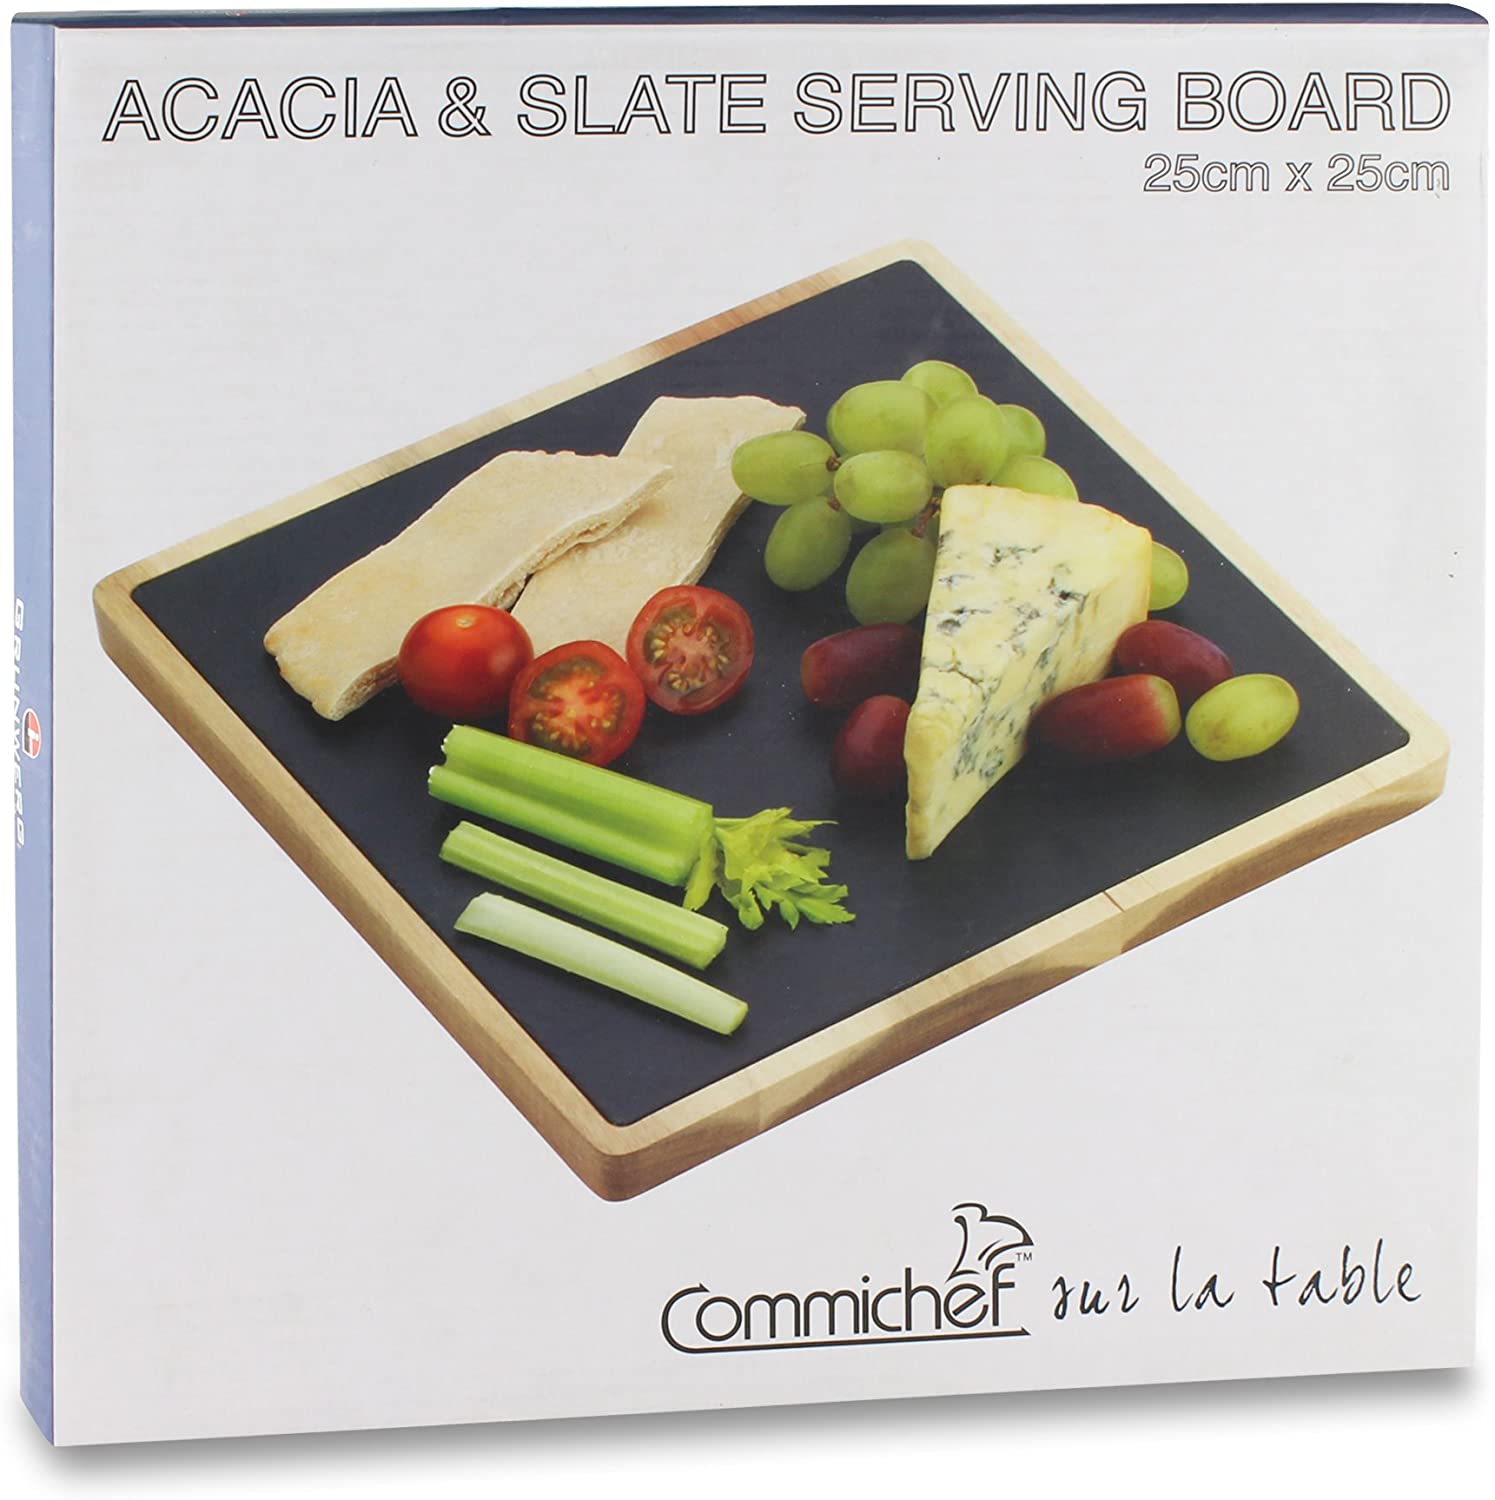 Grunwerg Acacia & Slate Serving Board 25x25cm RRP £9.99 CLEARANCE XL £6.99